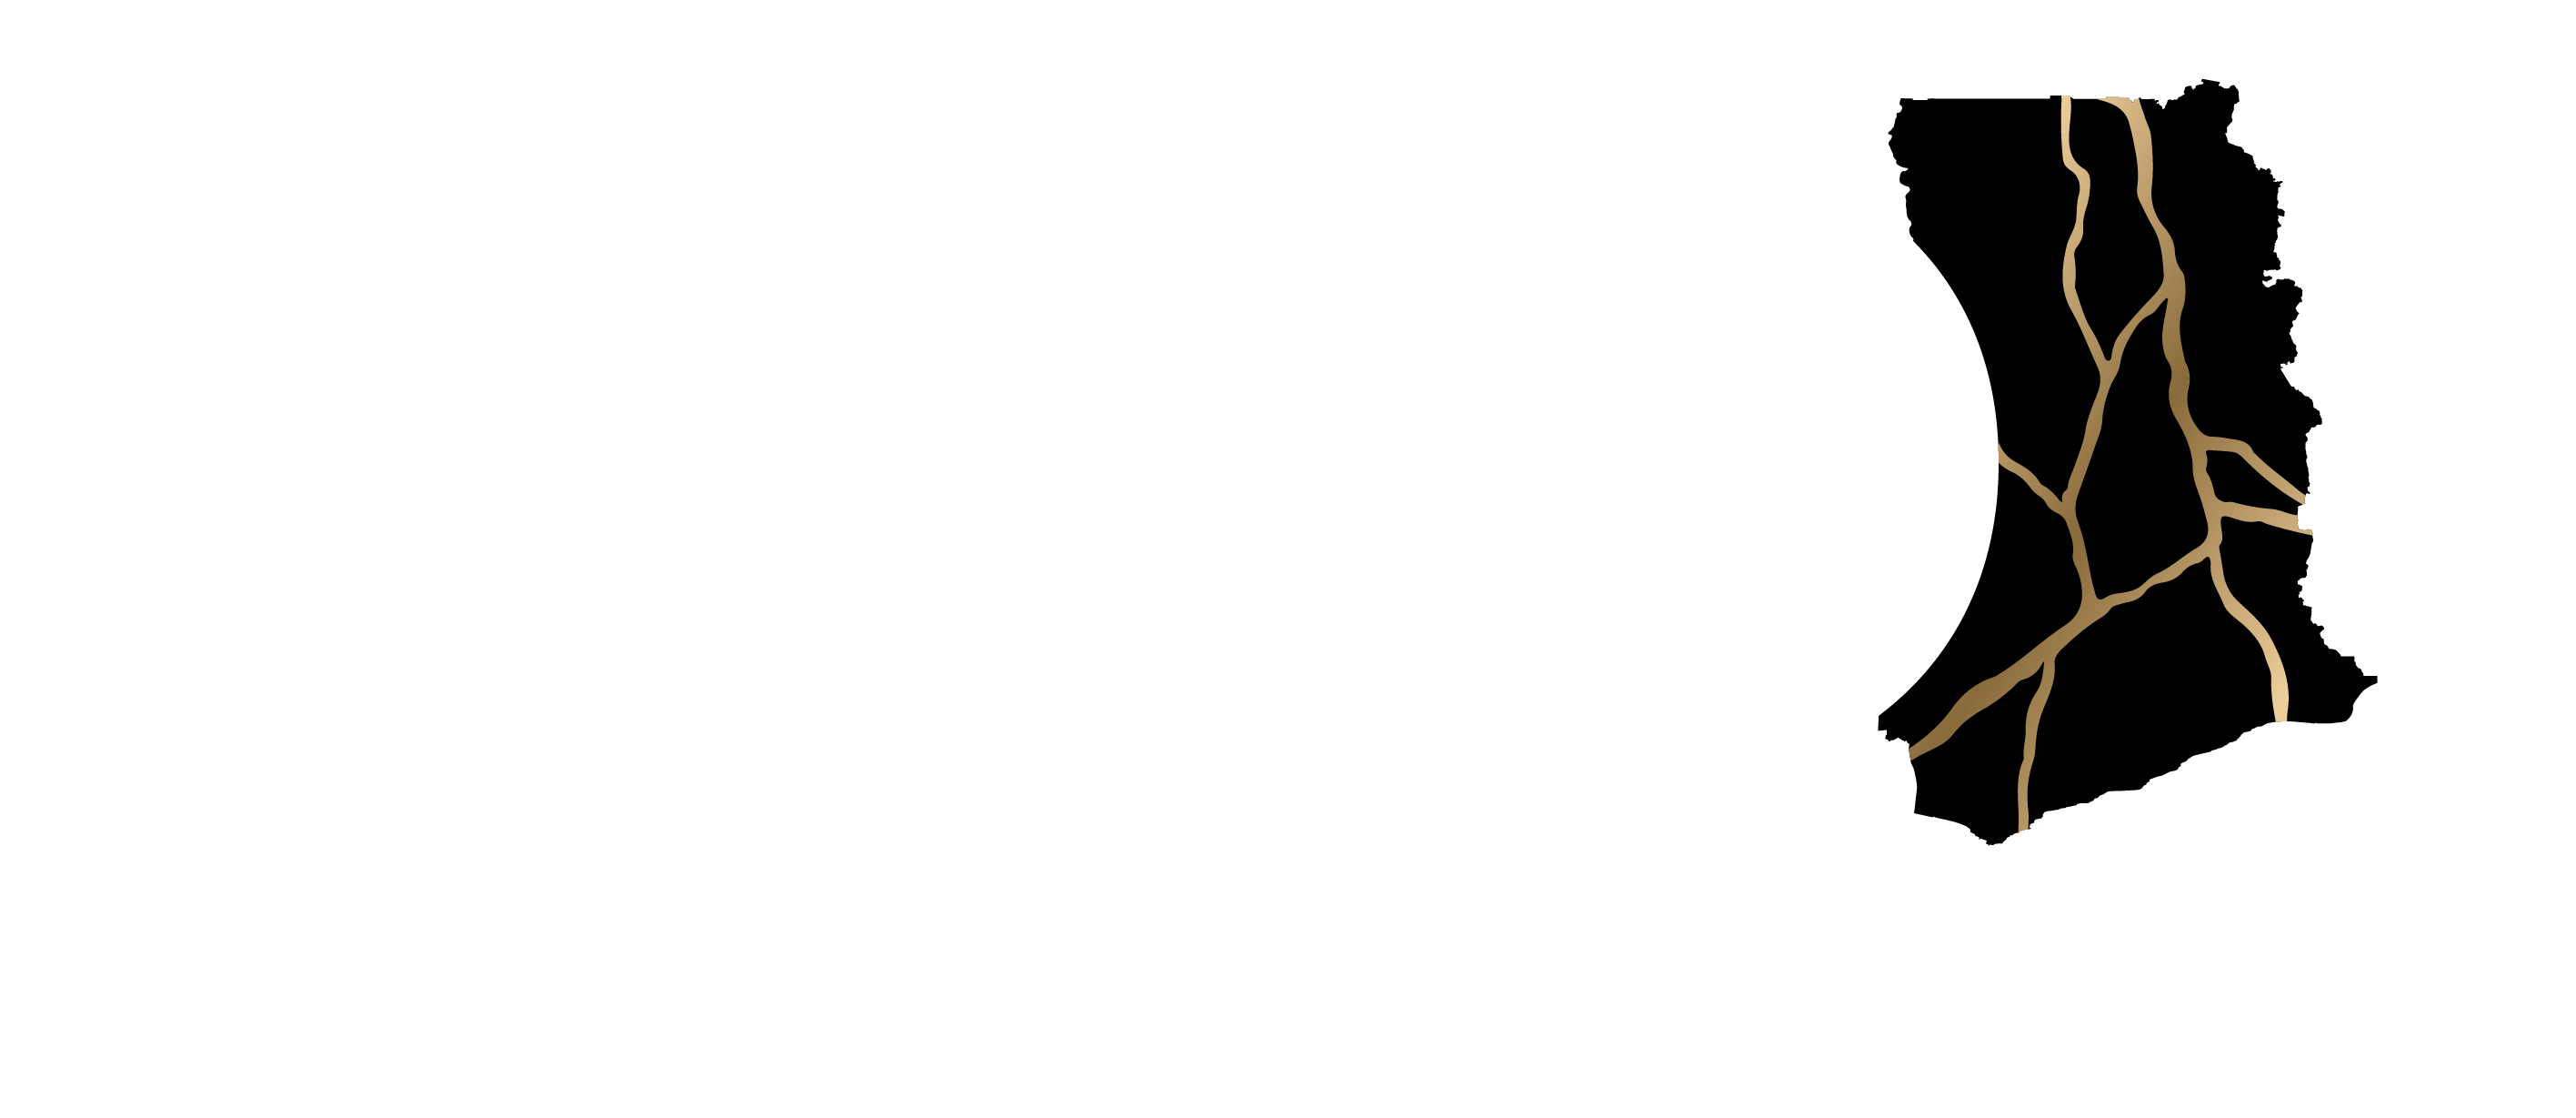 The Ghanaian Dream